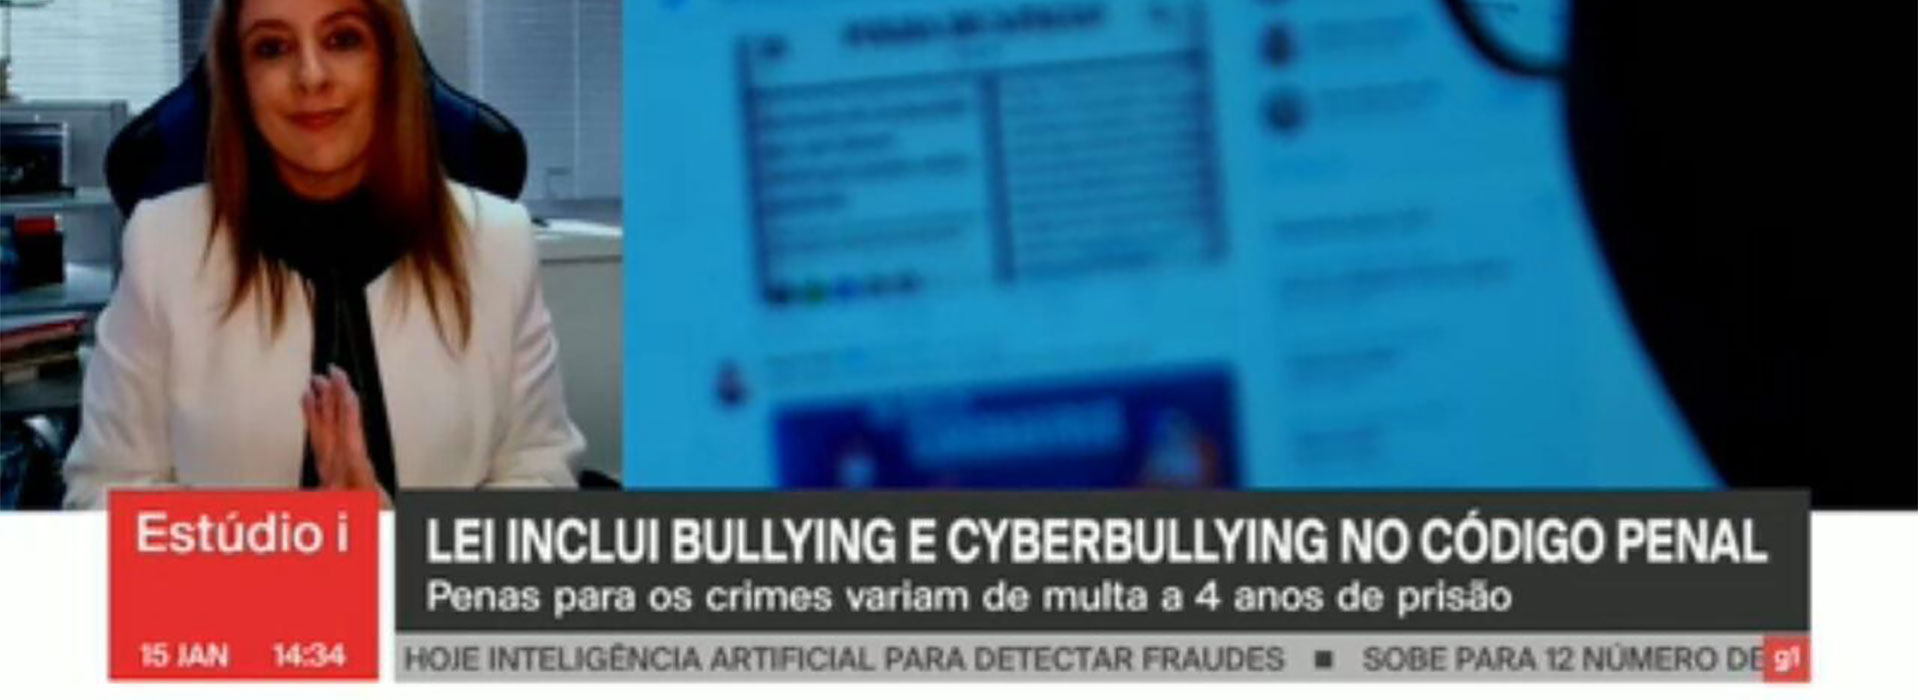 A nova legislação incorpora o bullying e o cyberbullying ao Código Penal, estabelecendo sanções que variam entre multas e penas de prisão de até quatro anos